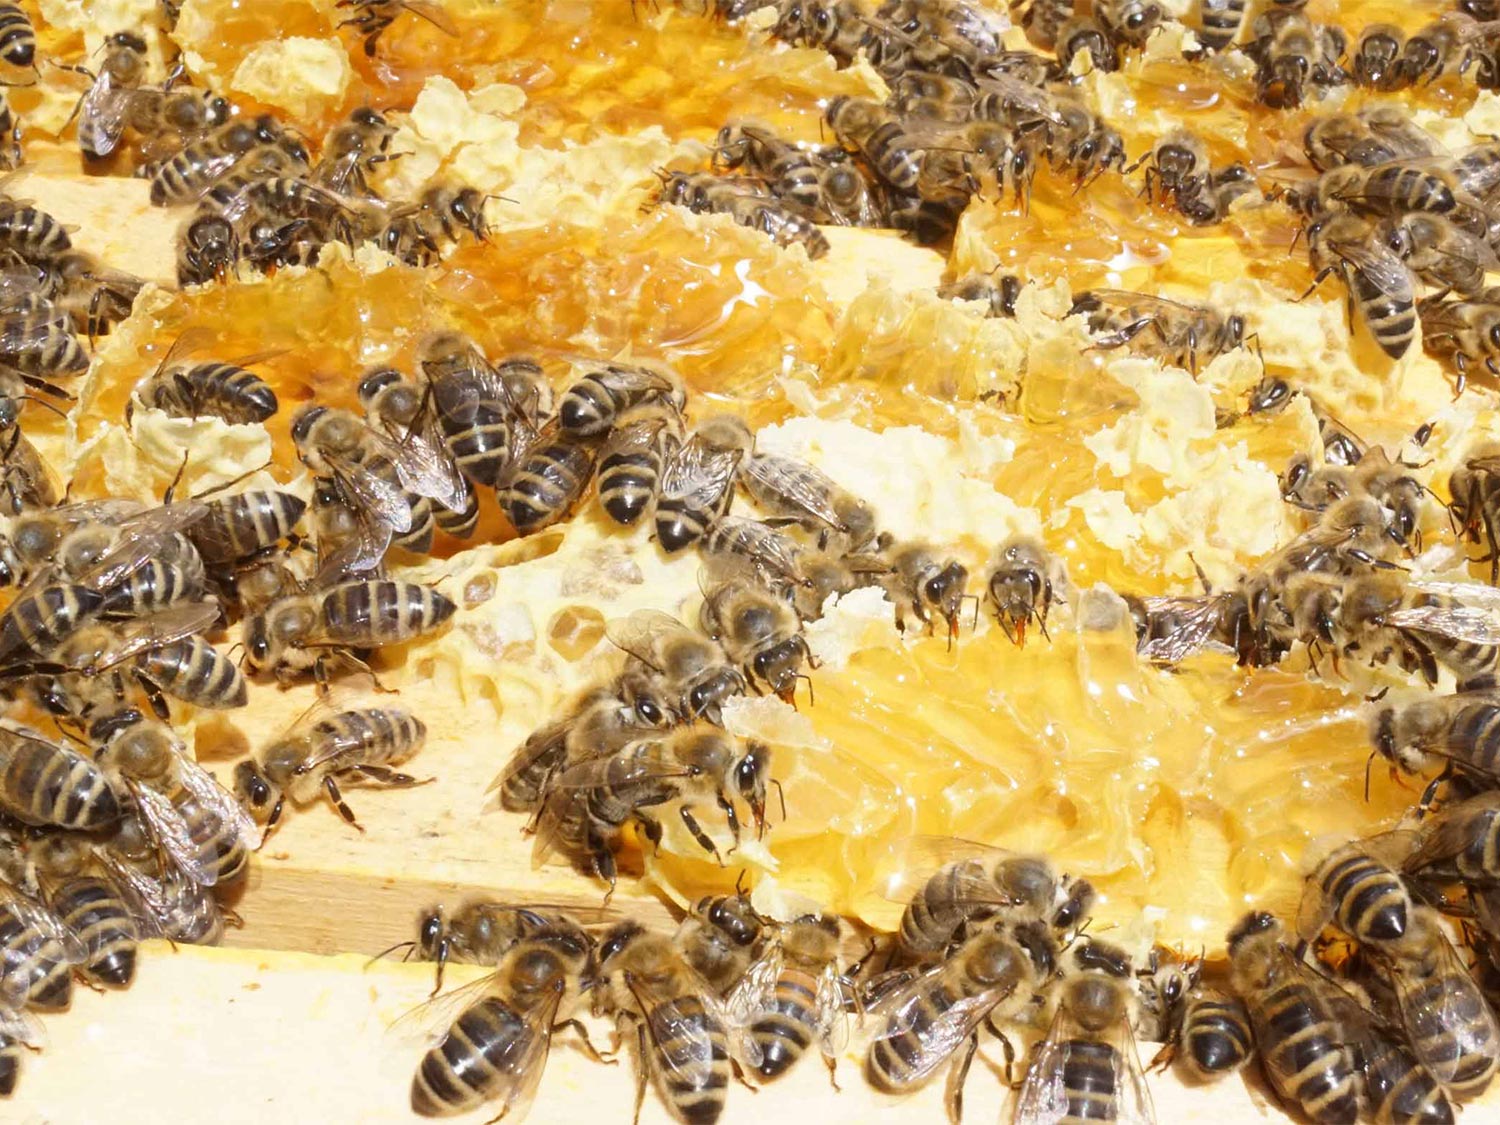 Imker in weißer Schutzkleidung entnimmt einen Wabenrahmen aus dem Bienenstock | mey®